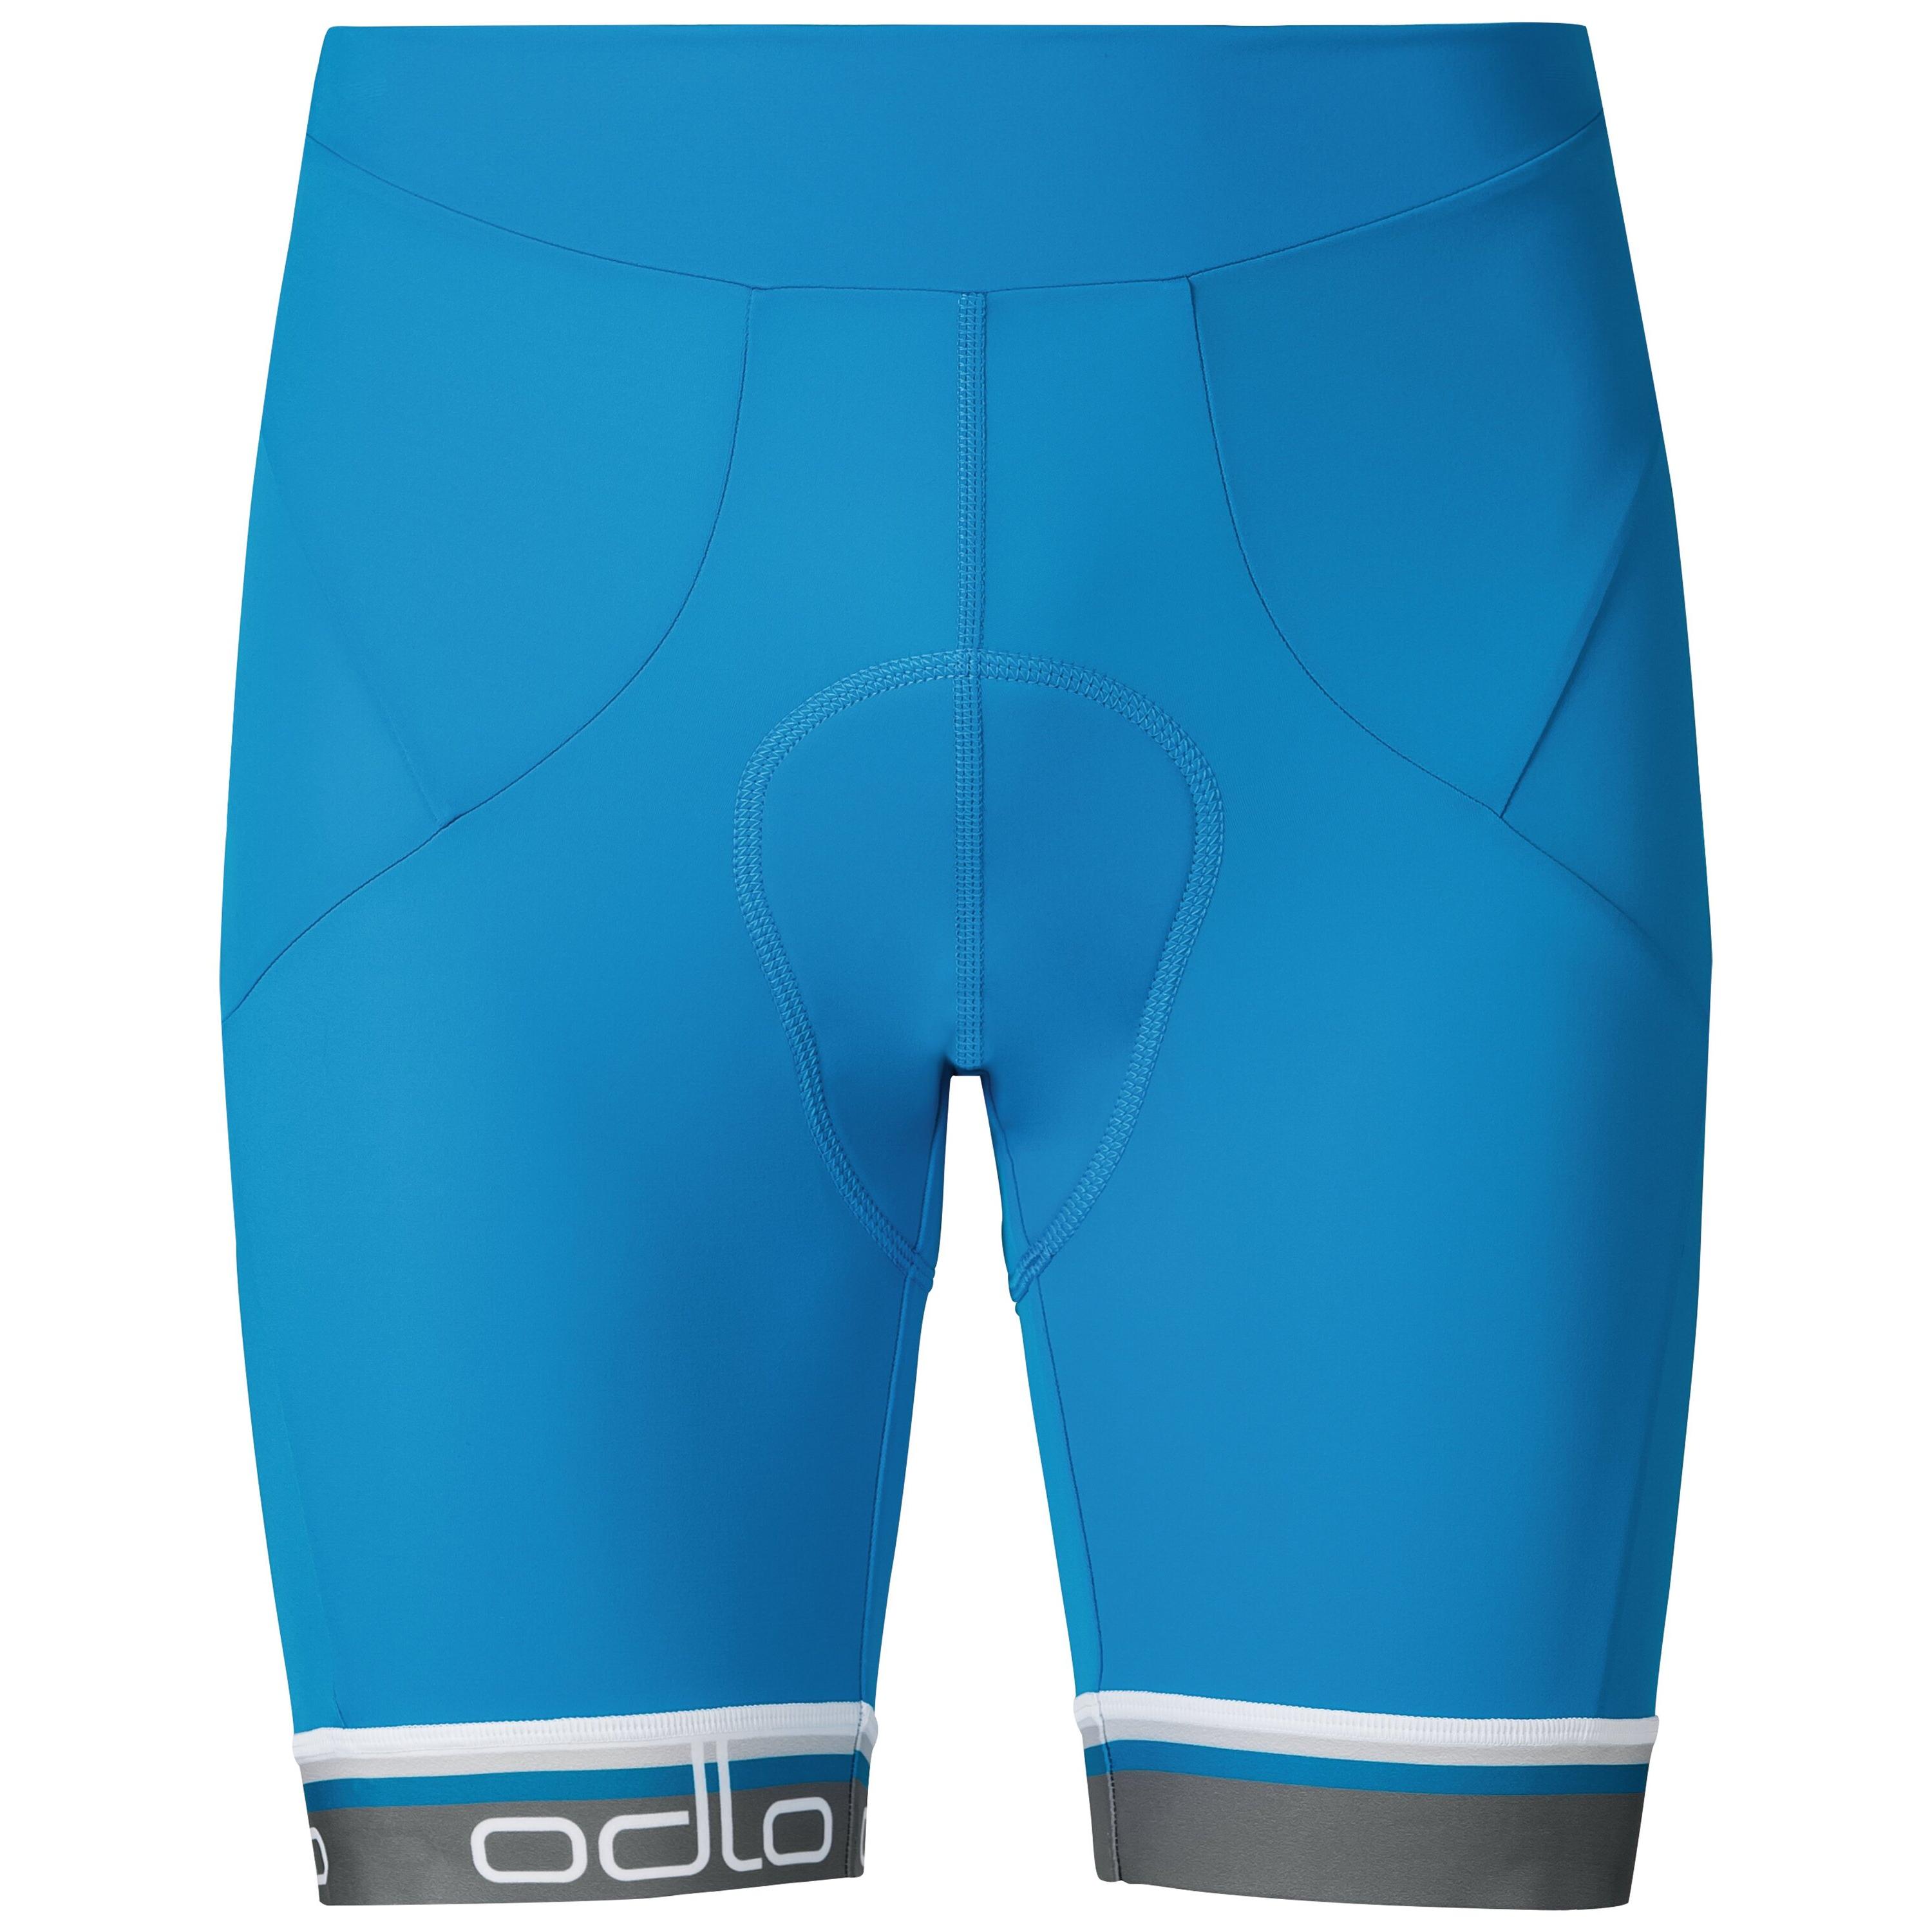 ODLO Flash X Radfahrershorts für Herren, S, blau